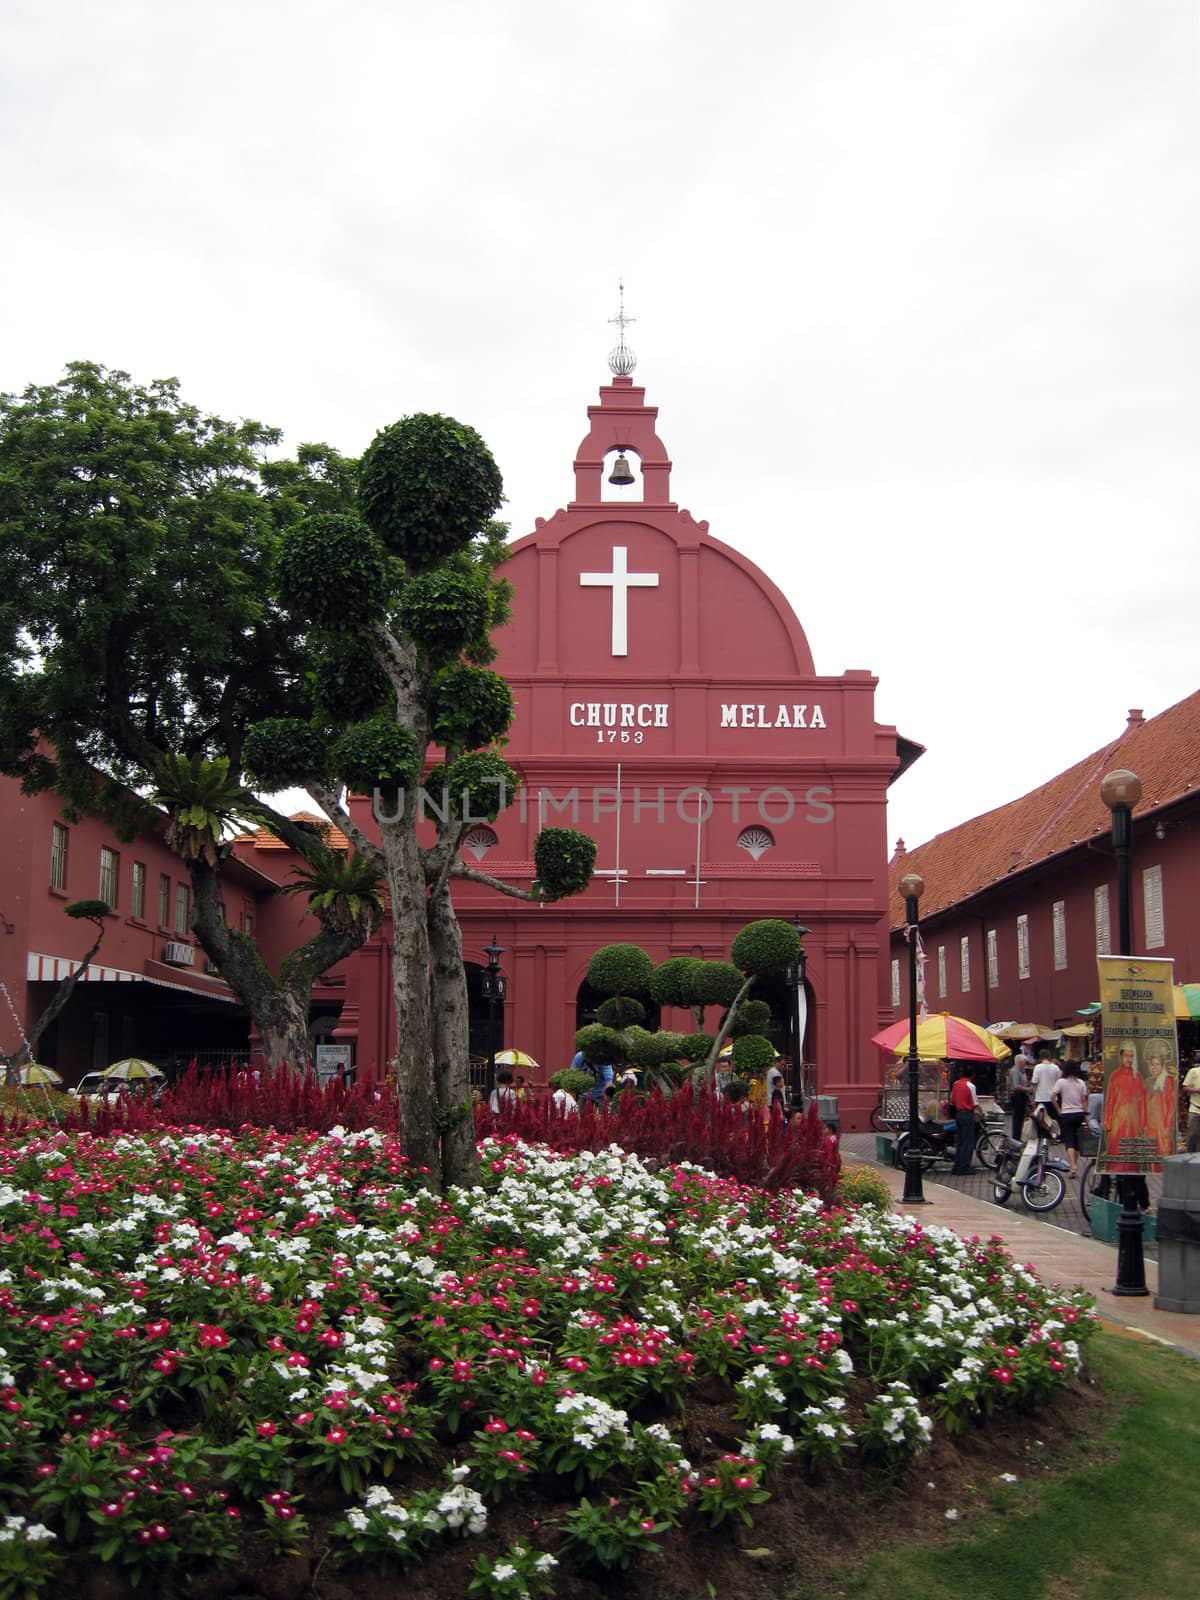 Church of Melaka is a historic landmark in Malaysia